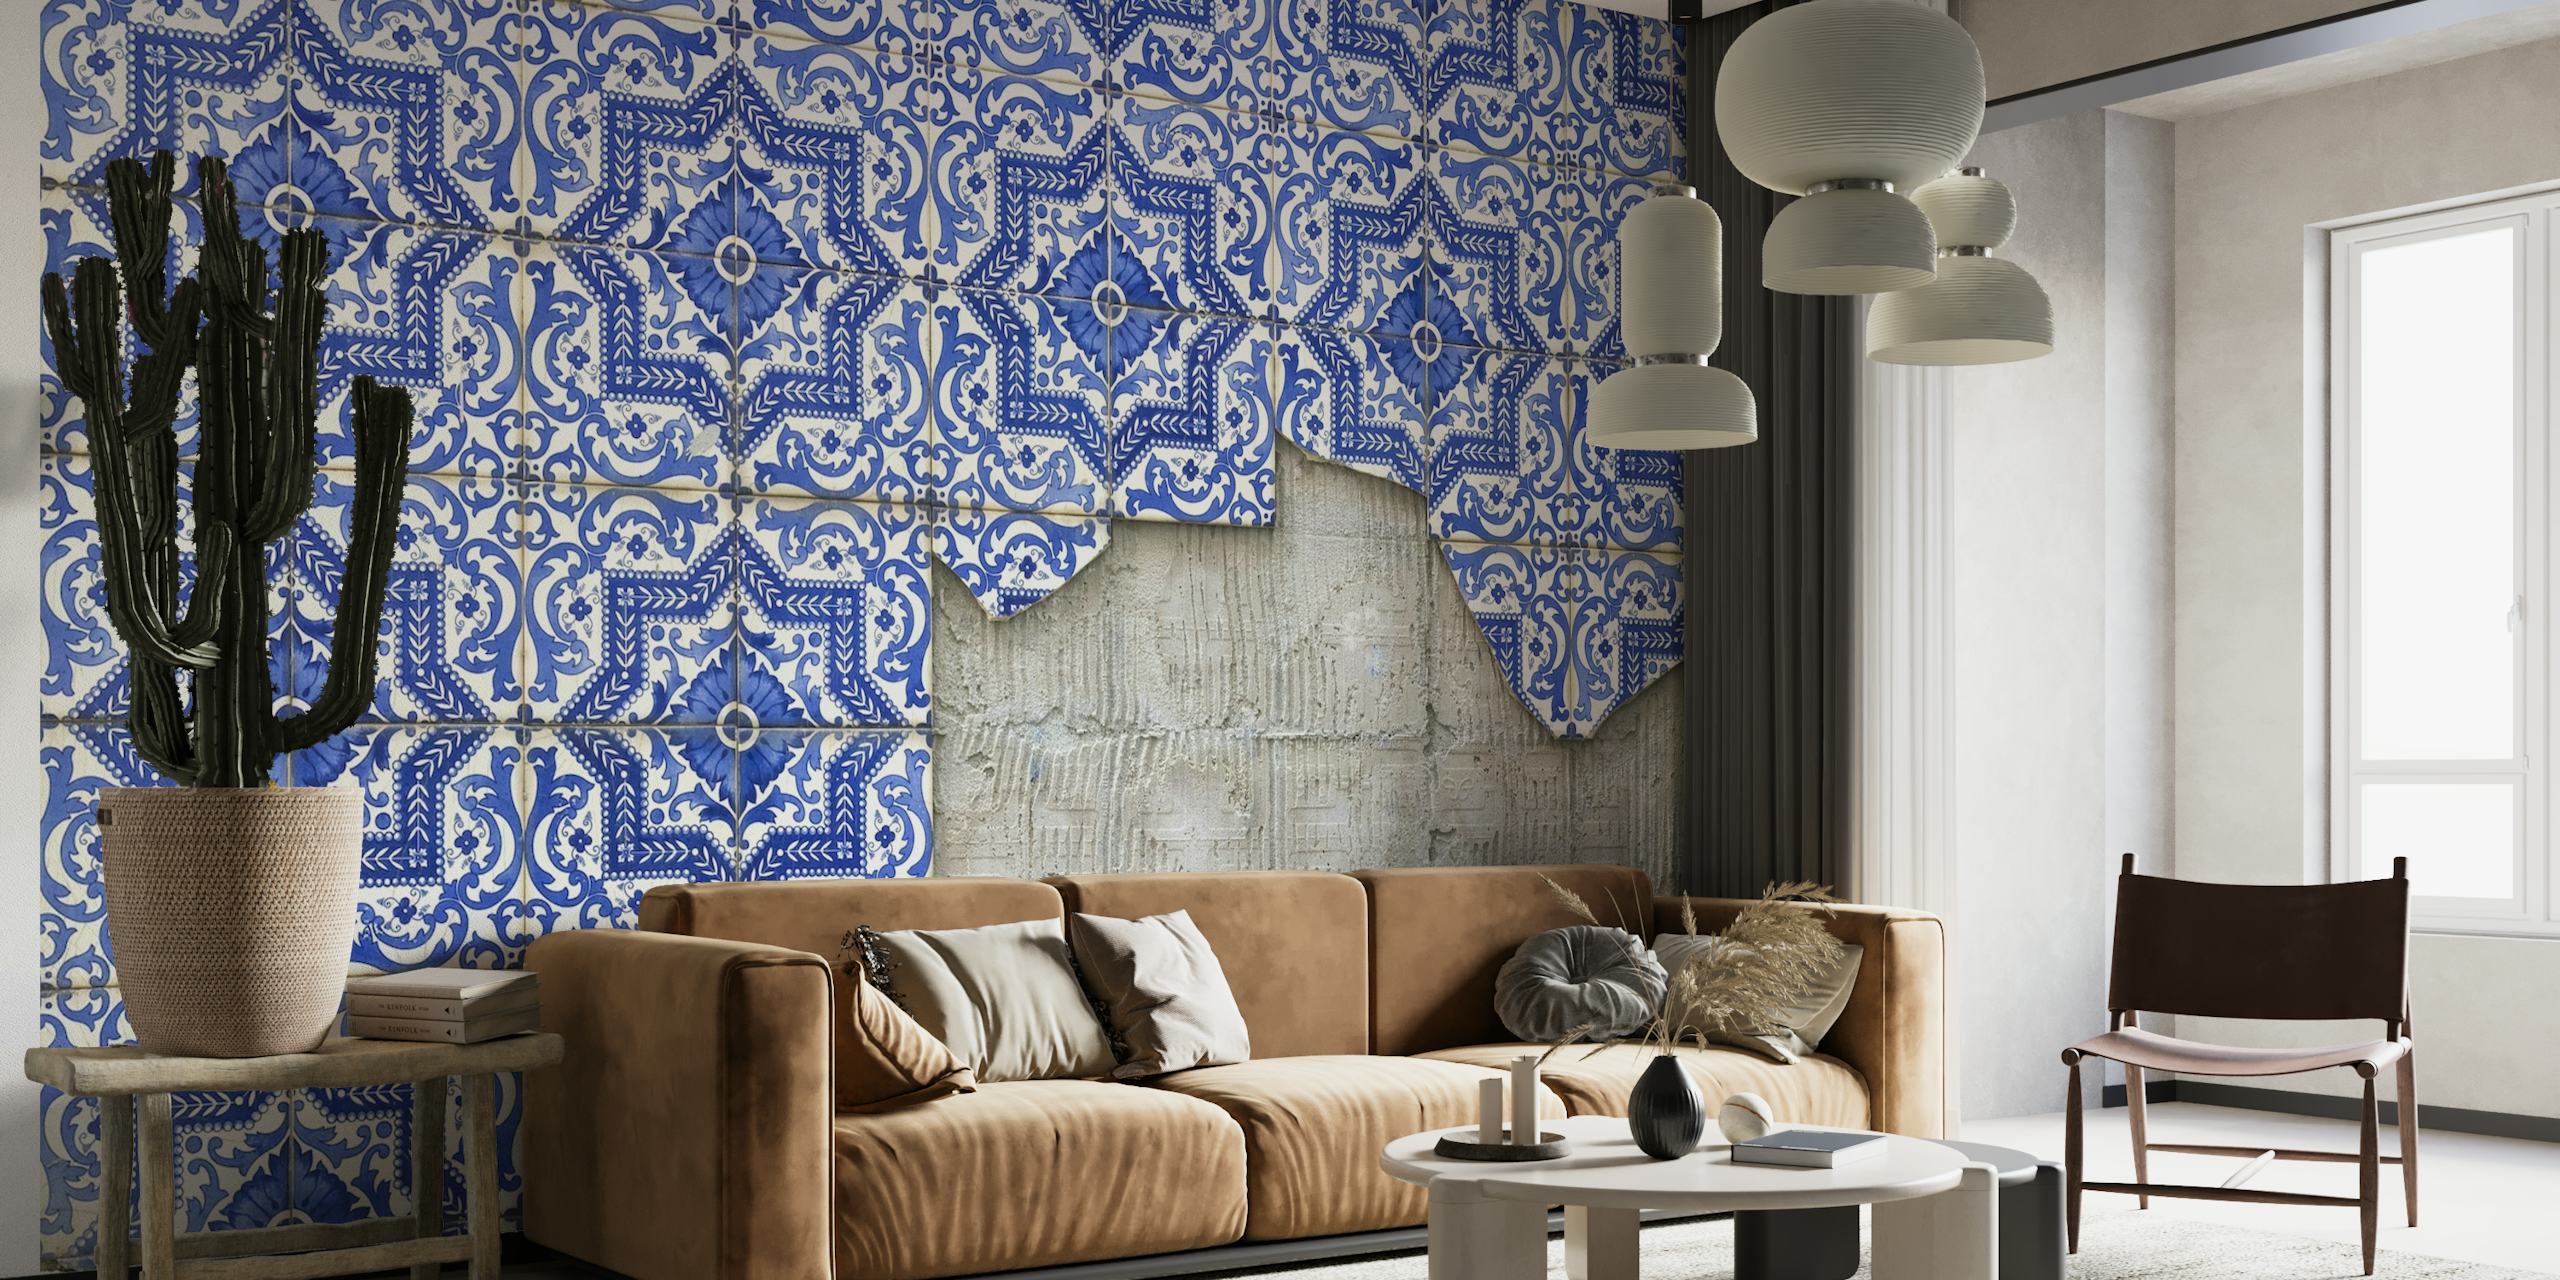 Azulejos tiles in Lisbon papiers peint